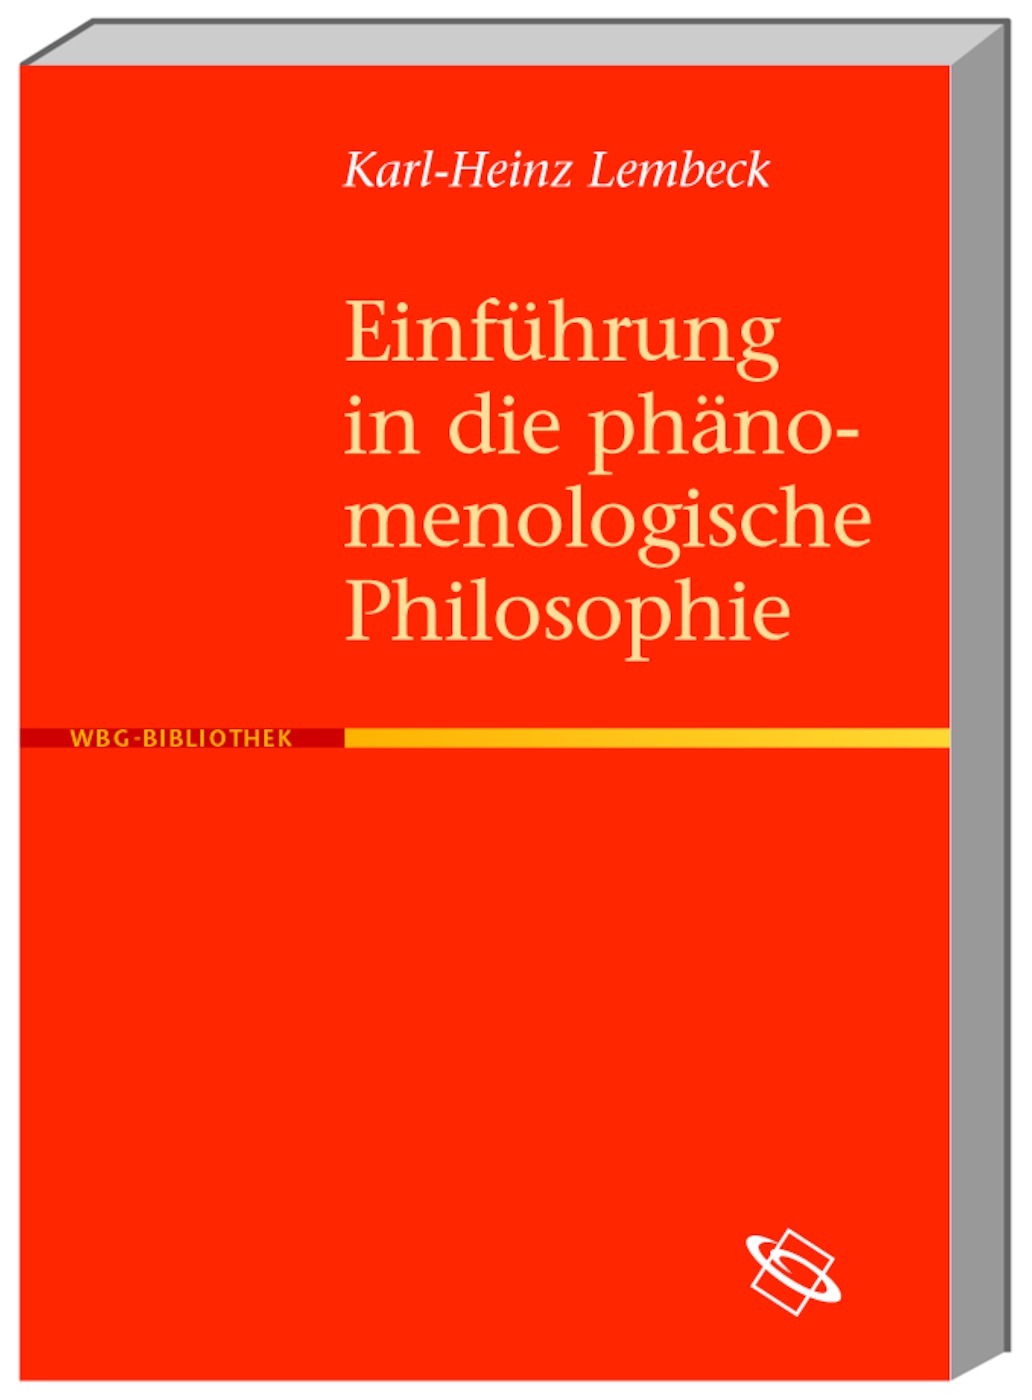 Karl H Lembeck / Einführung in die phänomenologische Philosophie - Karl H Lembeck